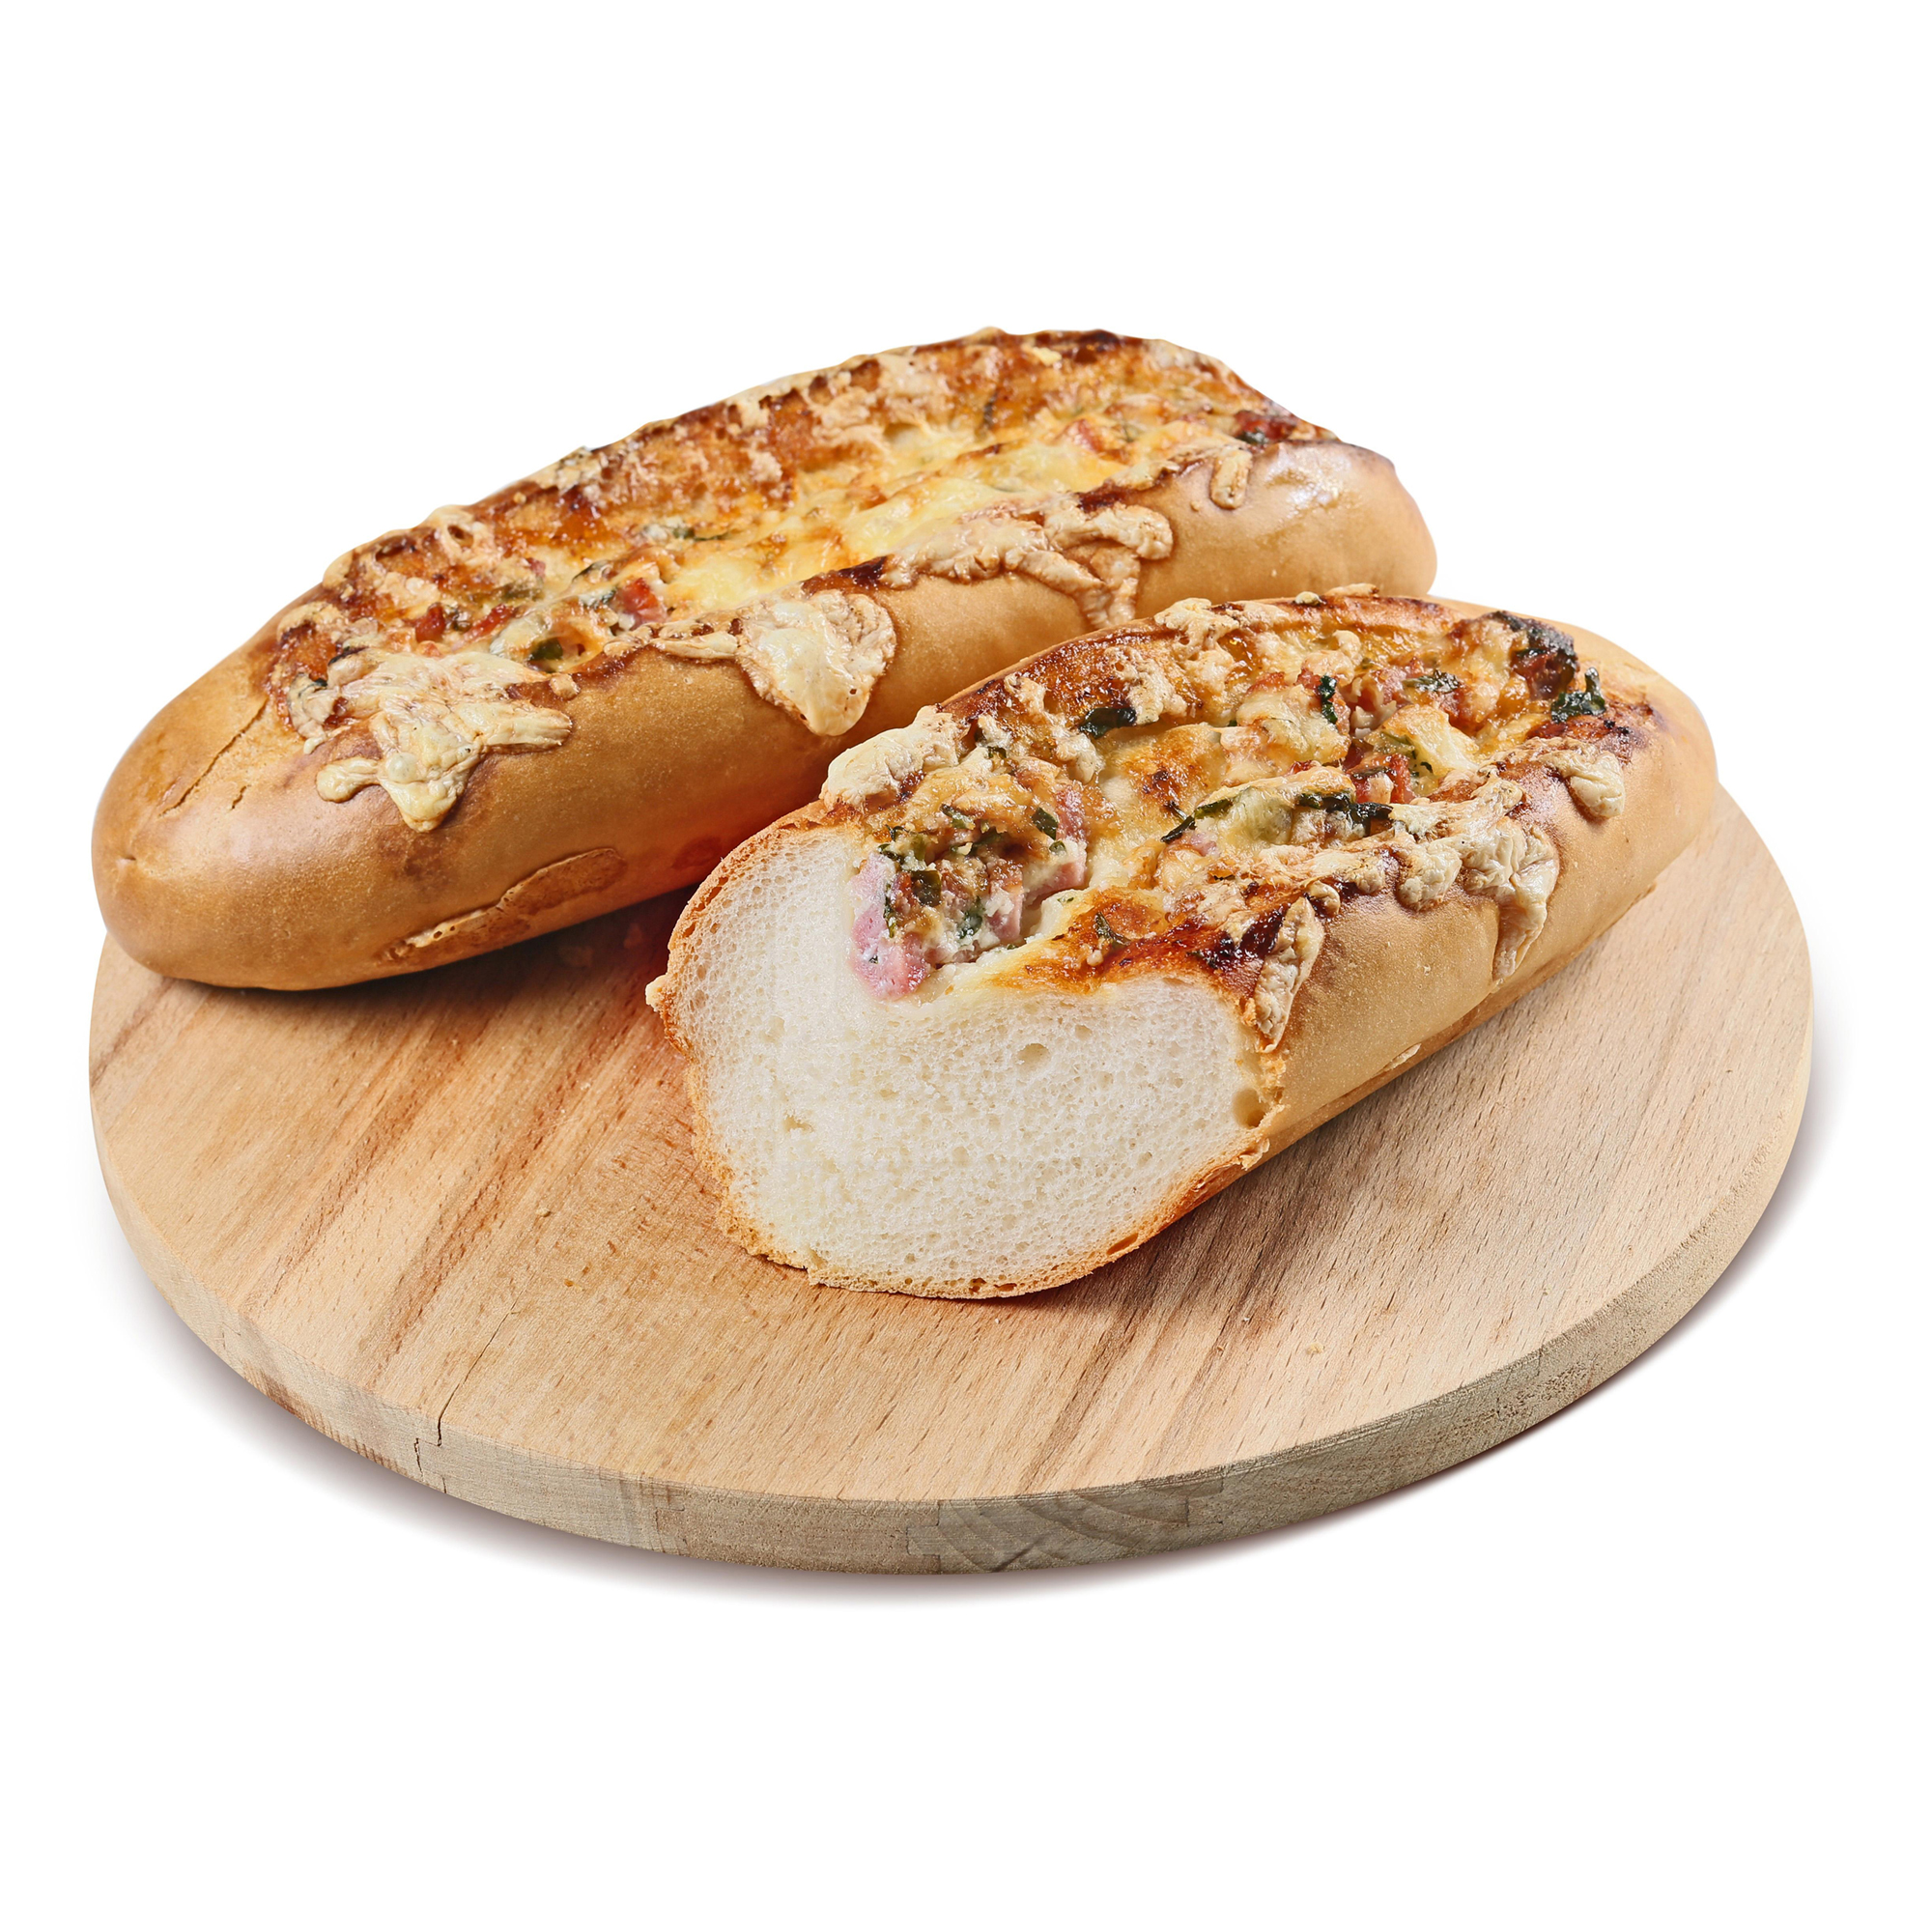 Хлеб Magnit Провансаль батон пшеничный с ветчиной 150 г